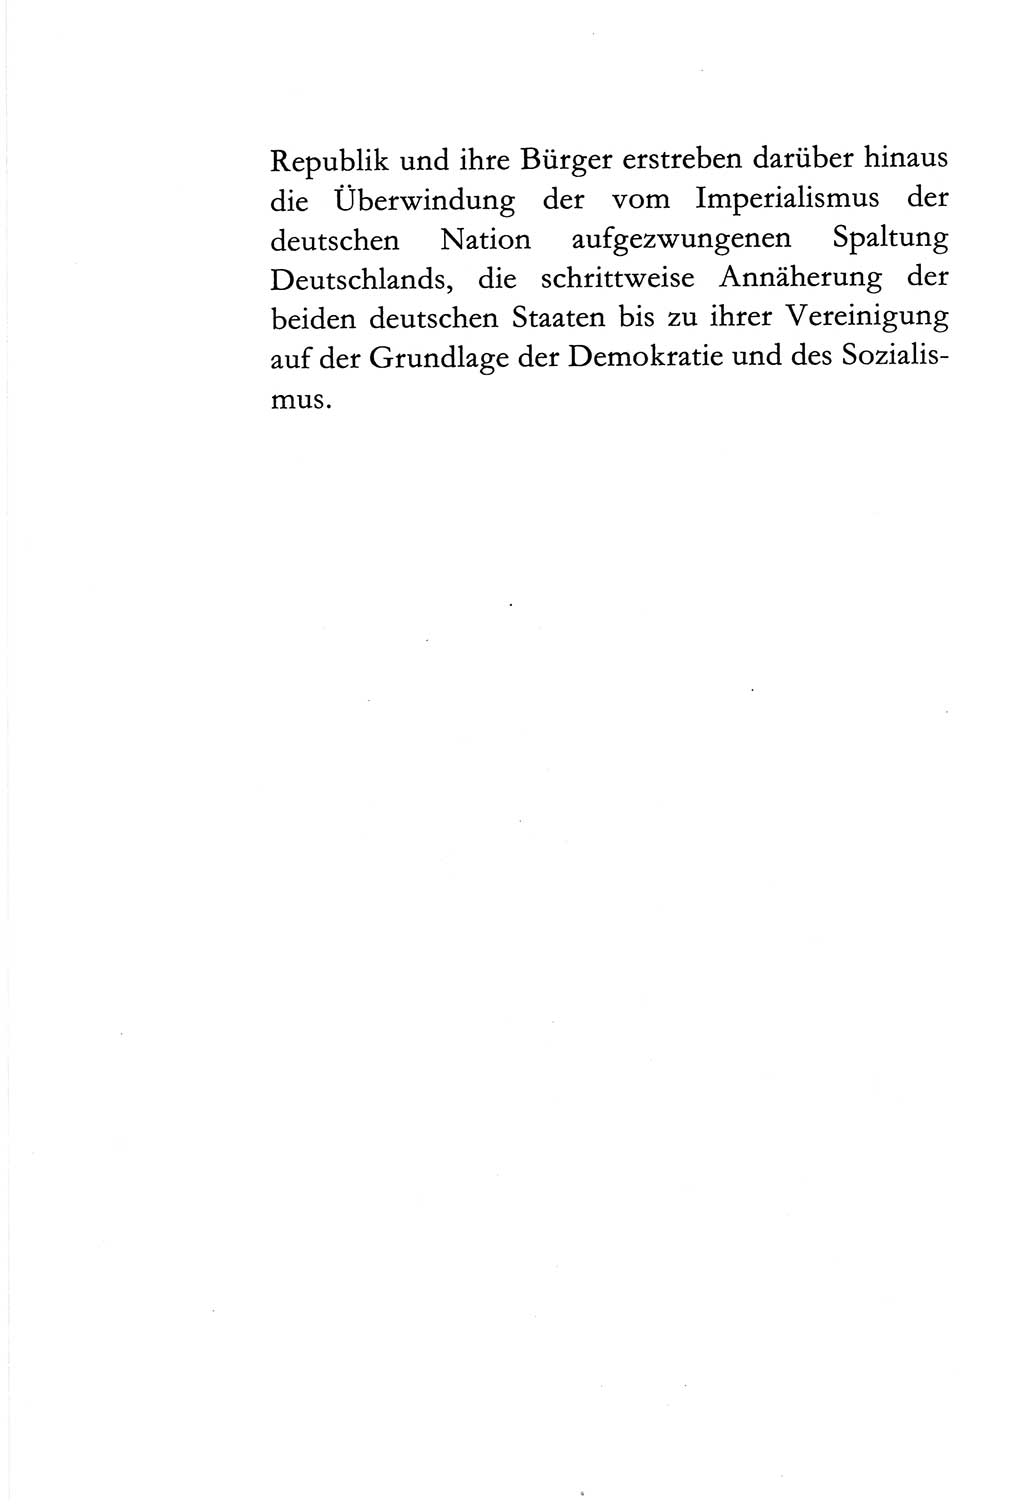 Verfassung der Deutschen Demokratischen Republik (DDR) vom 6. April 1968, Seite 14 (Verf. DDR 1968, S. 14)